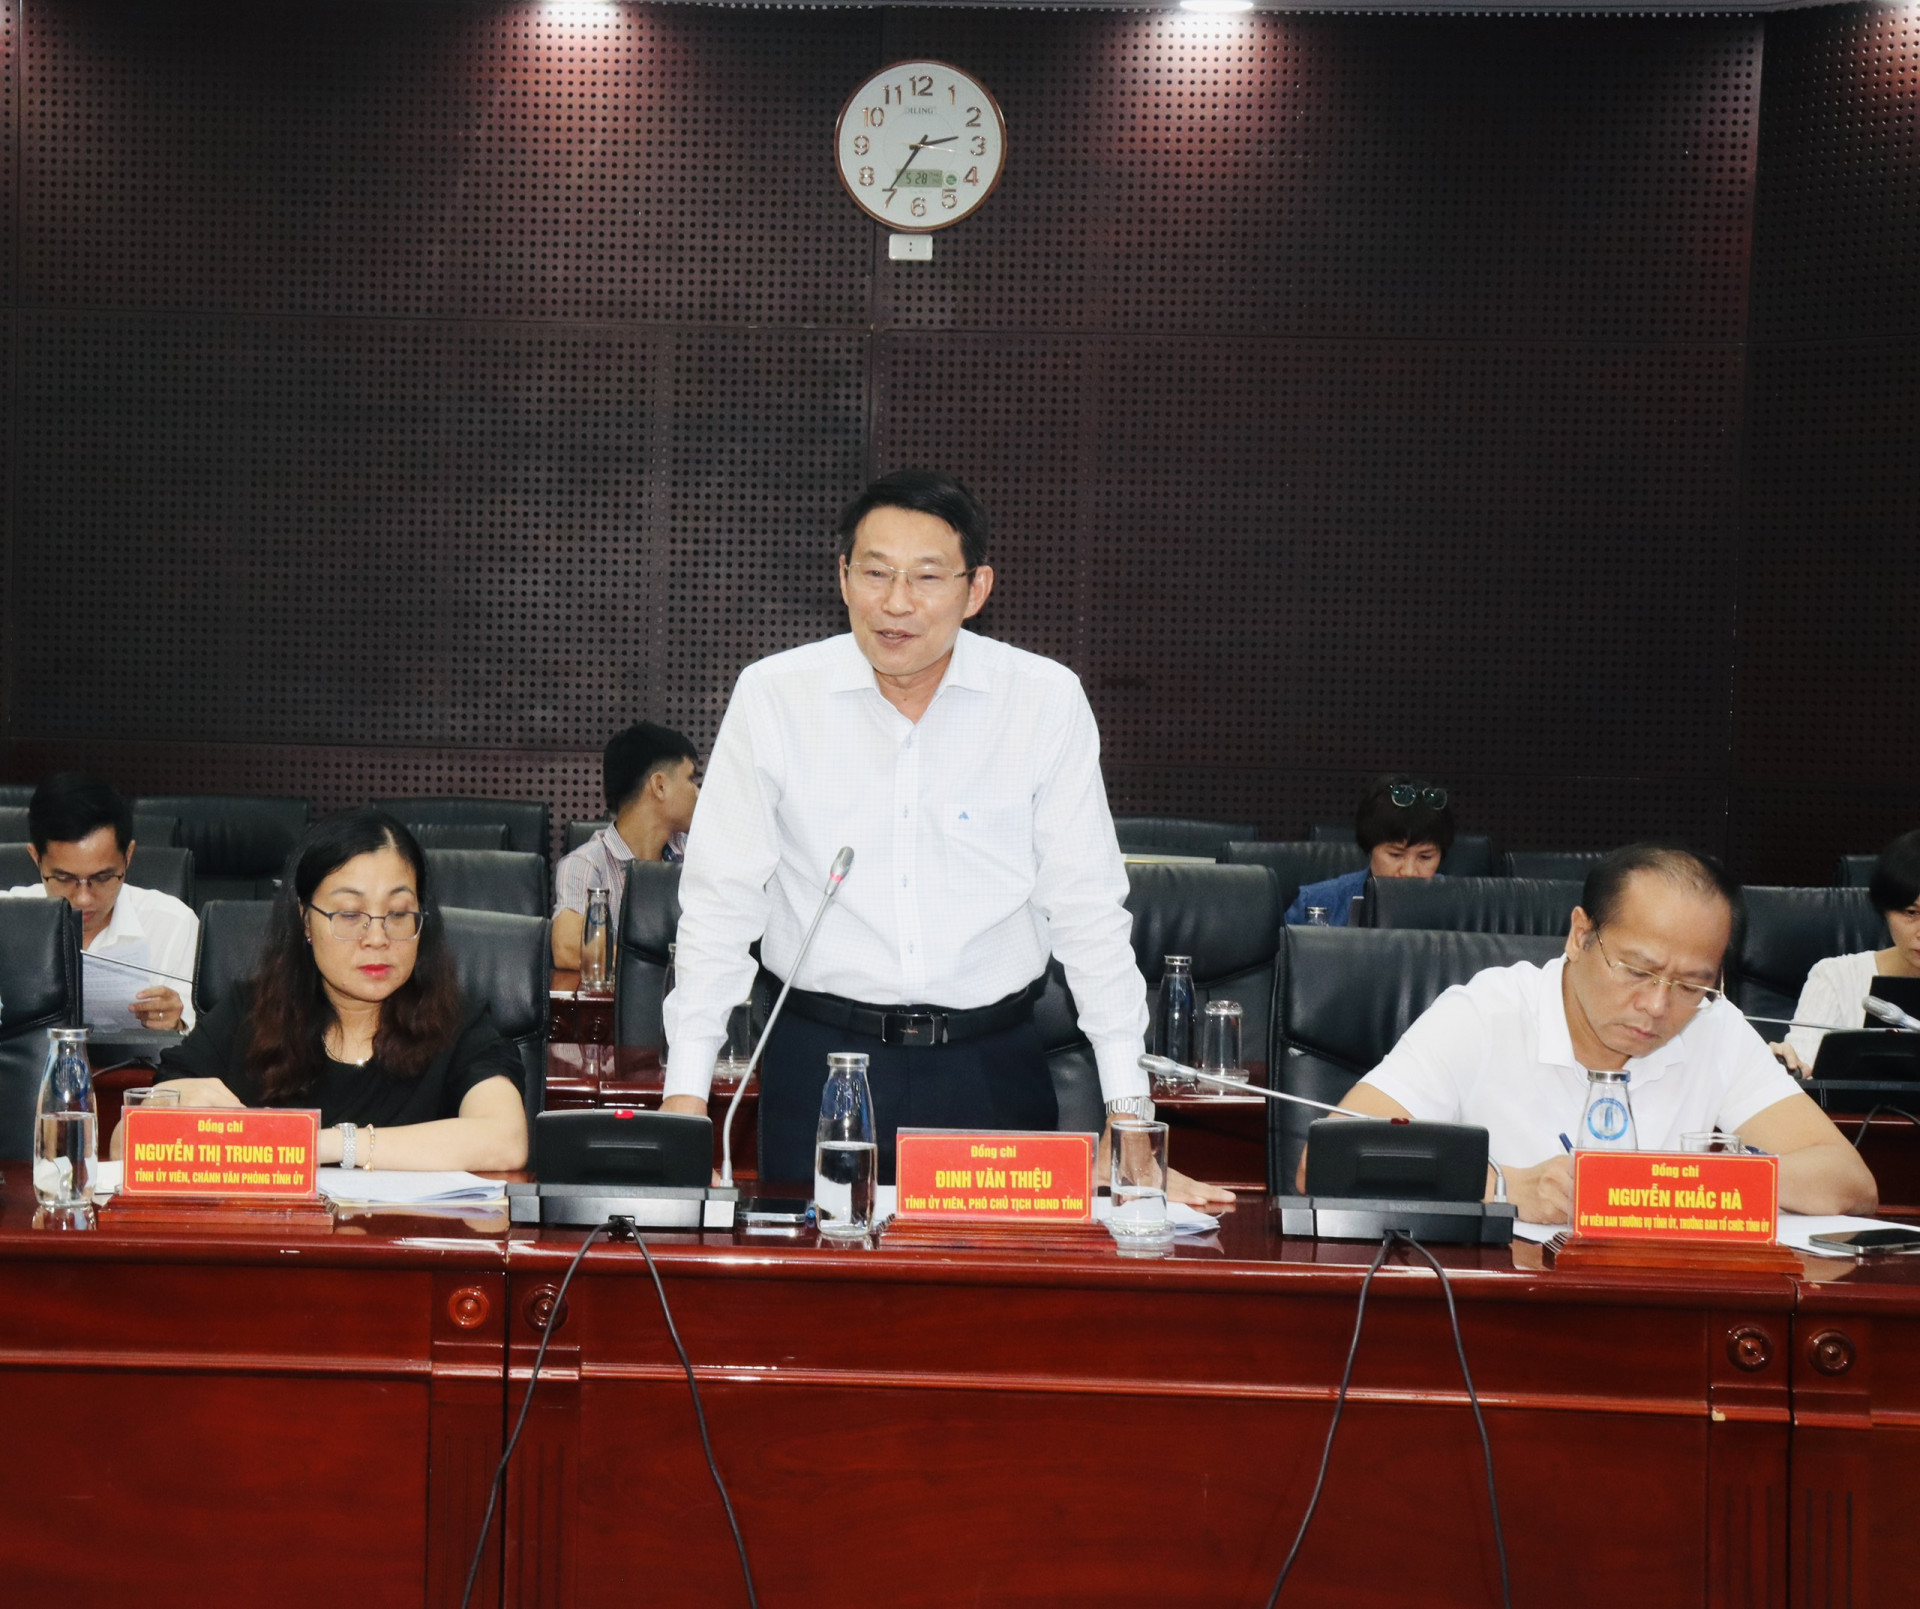 Phó Chủ tịch UBND tỉnh Đinh Văn Thiệu phát biểu tại buổi làm việc với thành phố Đà Nẵng